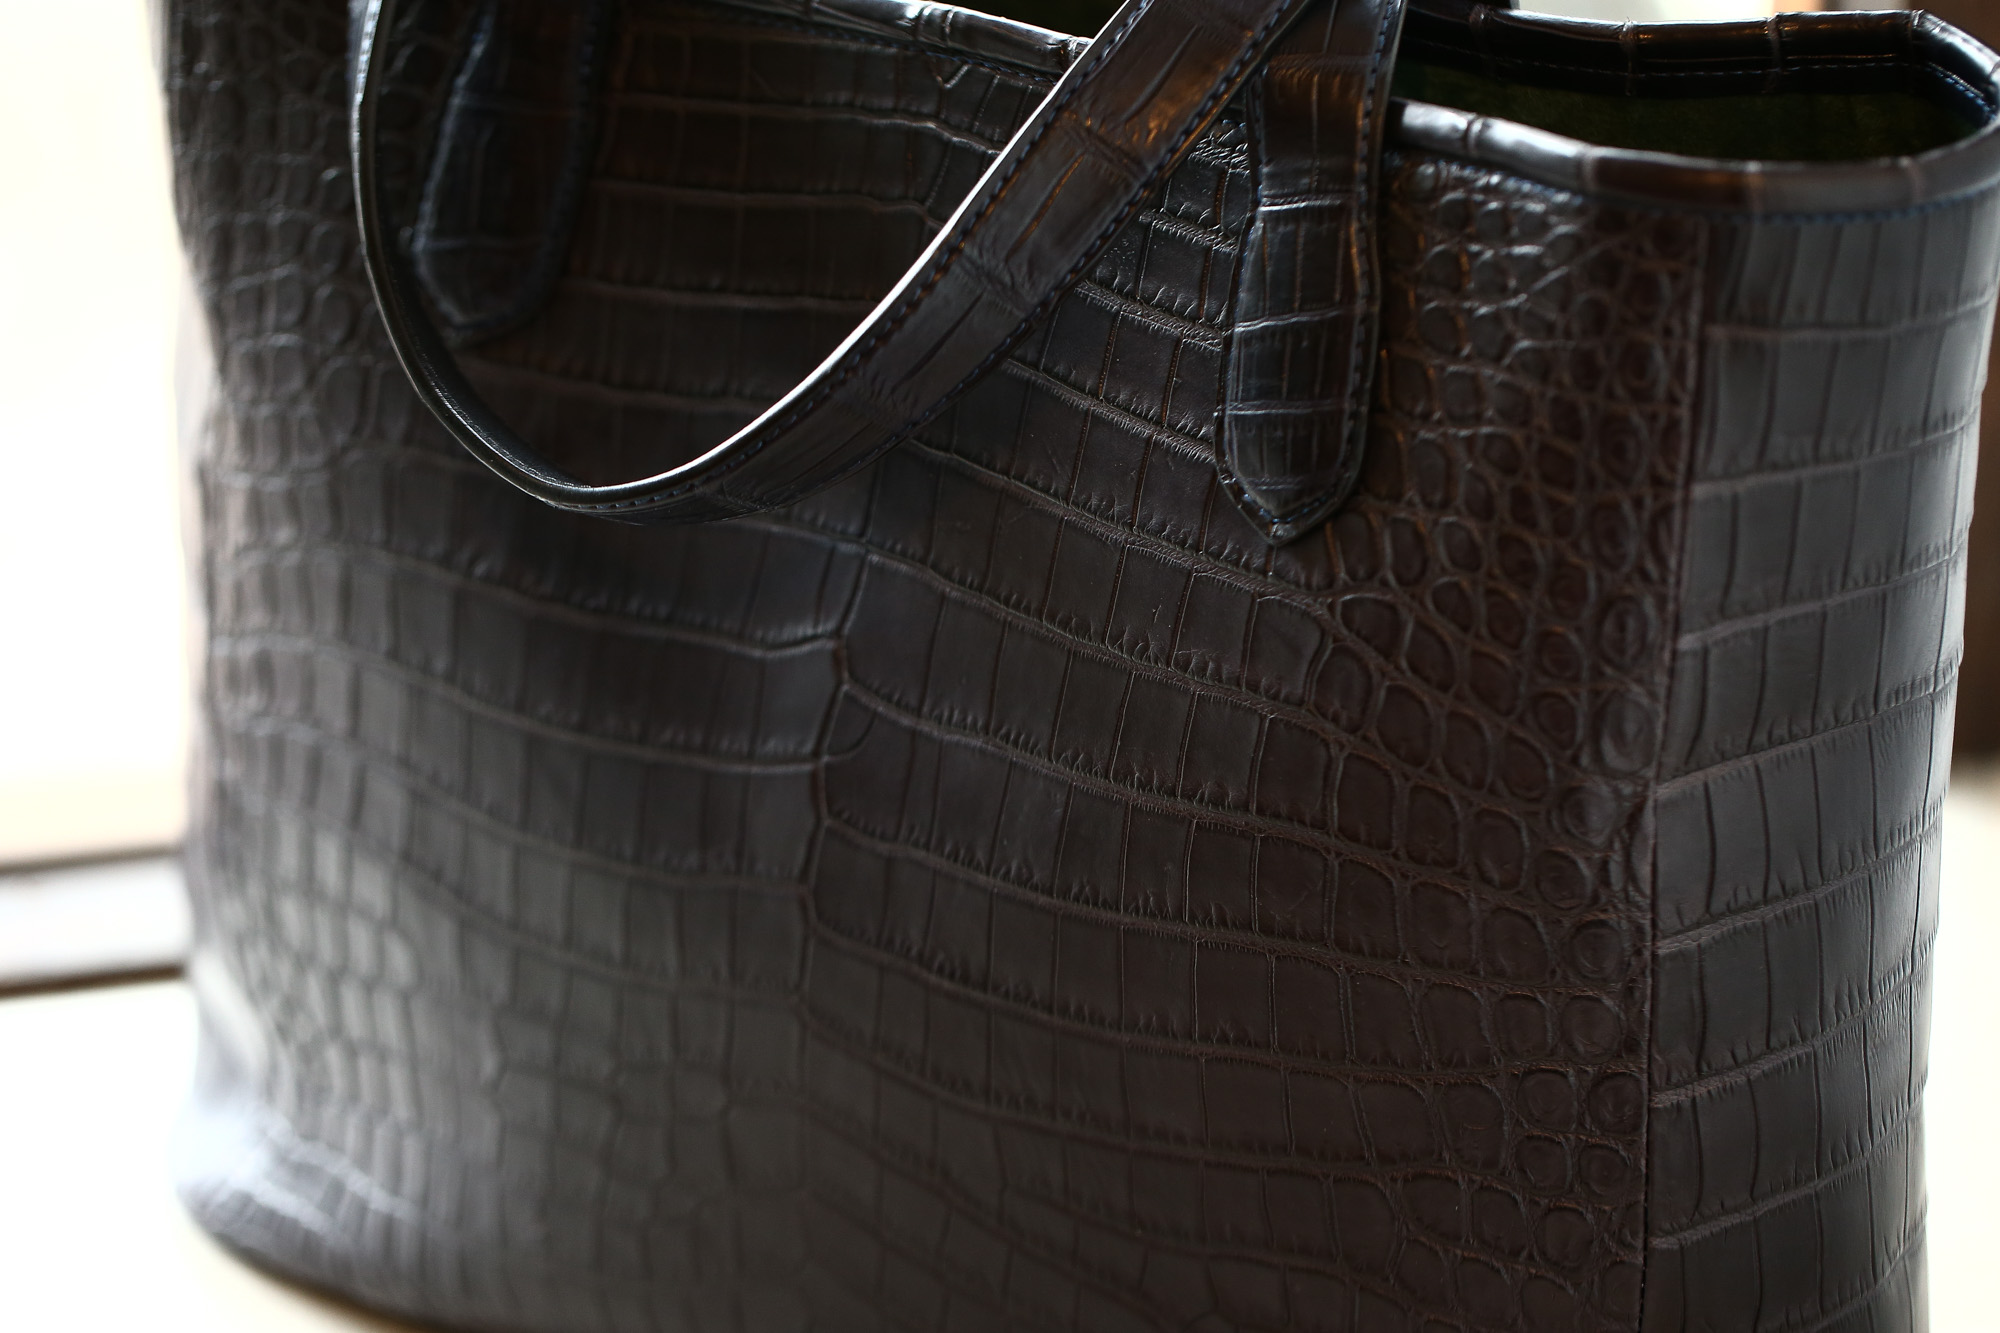 Cisei × 山本製鞄 (シセイ × 山本製鞄) Crocodile Tote Bag Medium (クロコダイル トートバッグ ミディアム) Nile Crocodile Leather (ワニ革) ナイル クロコダイル トート バッグ BLACK(ブラック),NAVY(ネイビー),BROWN(ブラウン) Made in Japan (日本製) cisei yamamotoseiho トートバック クロコ 愛知 名古屋 Alto e Diritto アルト エ デリット 